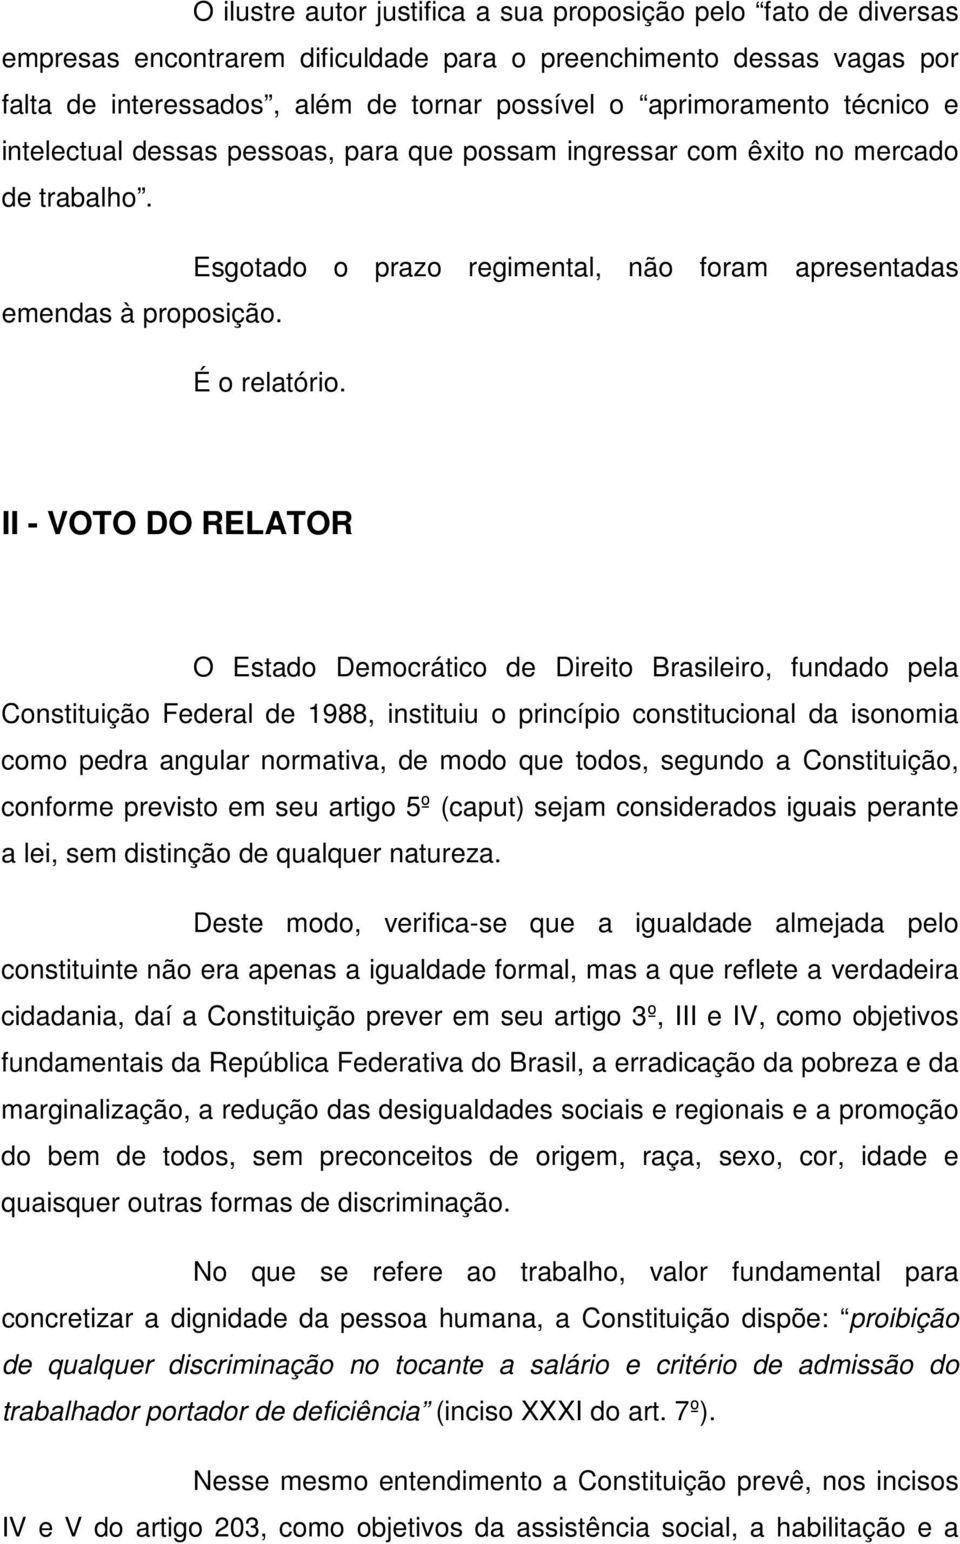 II - VOTO DO RELATOR O Estado Democrático de Direito Brasileiro, fundado pela Constituição Federal de 1988, instituiu o princípio constitucional da isonomia como pedra angular normativa, de modo que